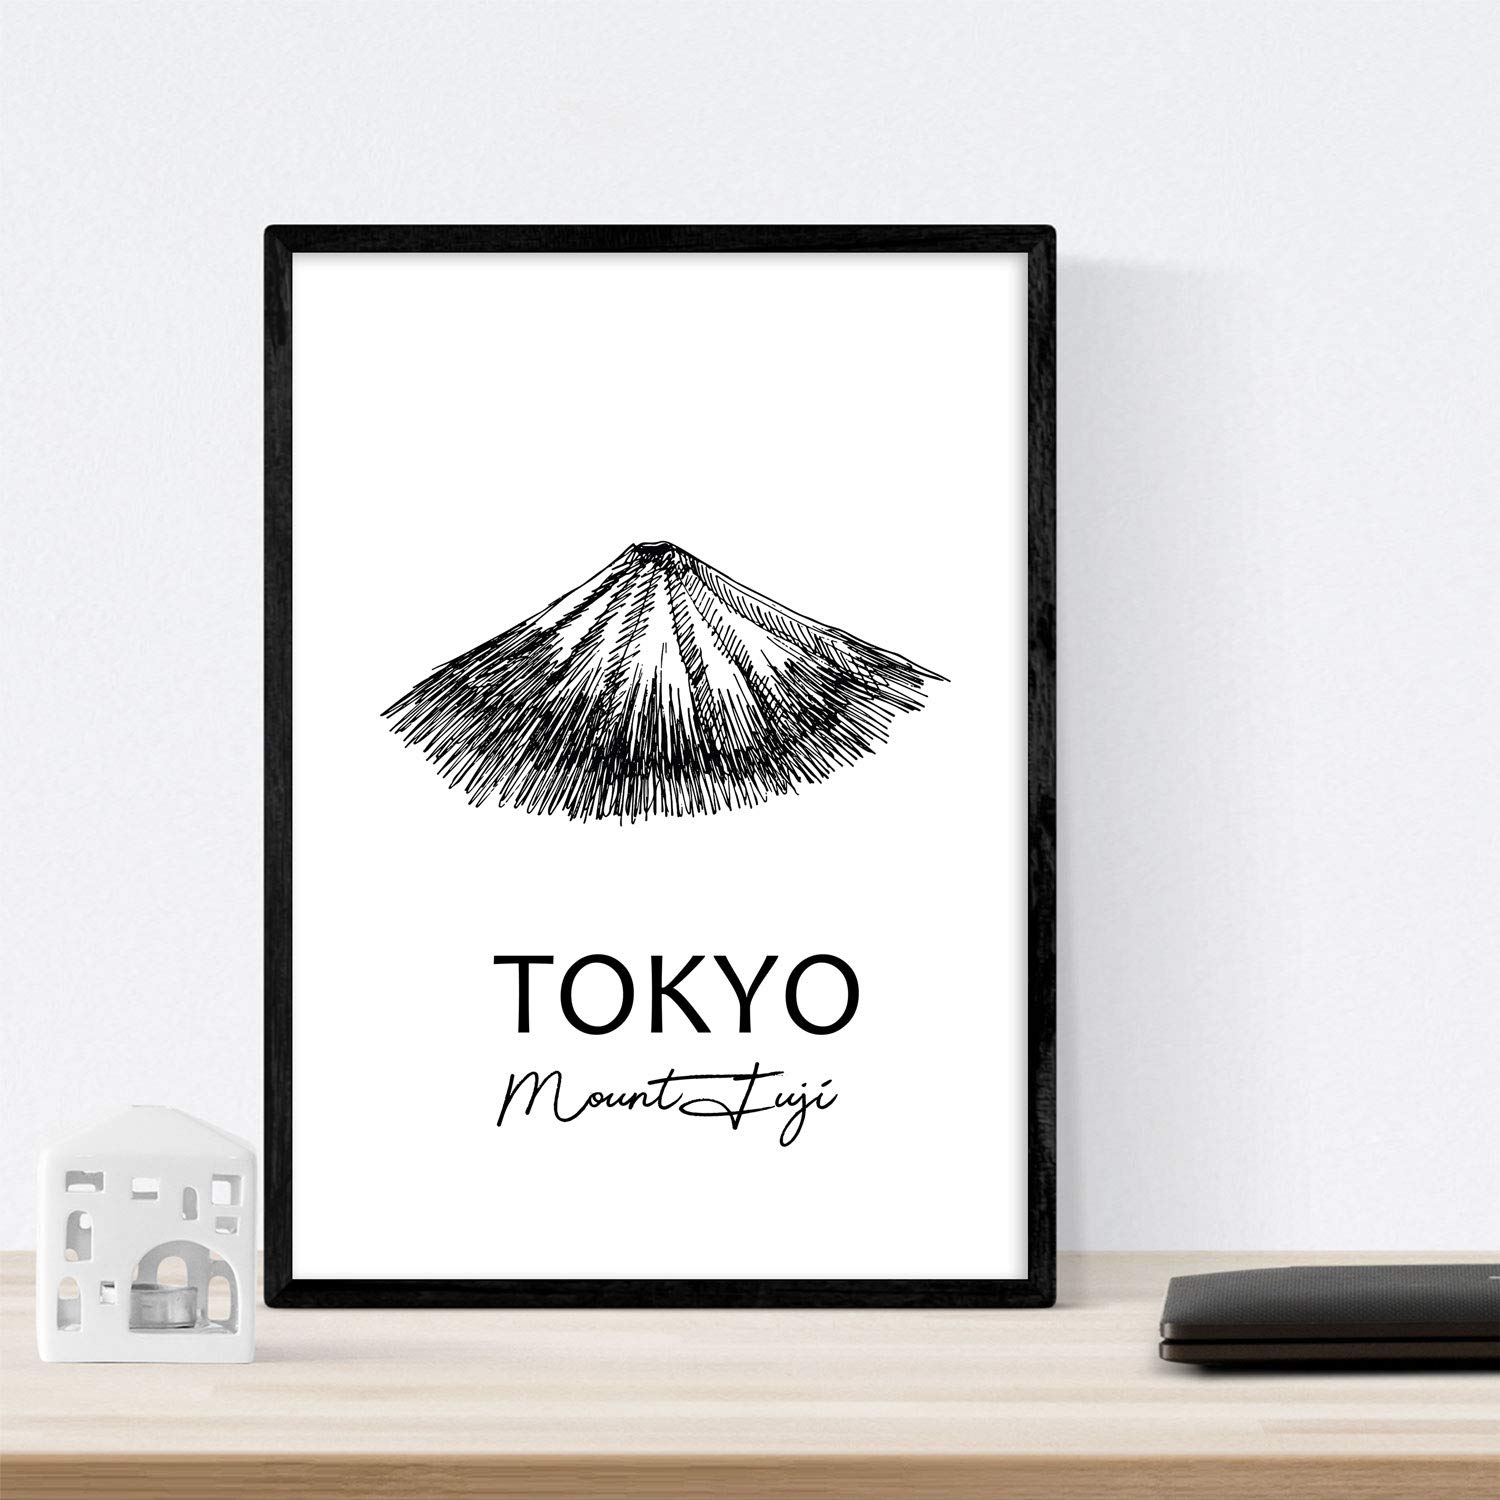 Pack de posters de paises y monumentos. Mapa cuidad Tokio, monumento monte Fuji y mapa Japon.-Artwork-Nacnic-Nacnic Estudio SL